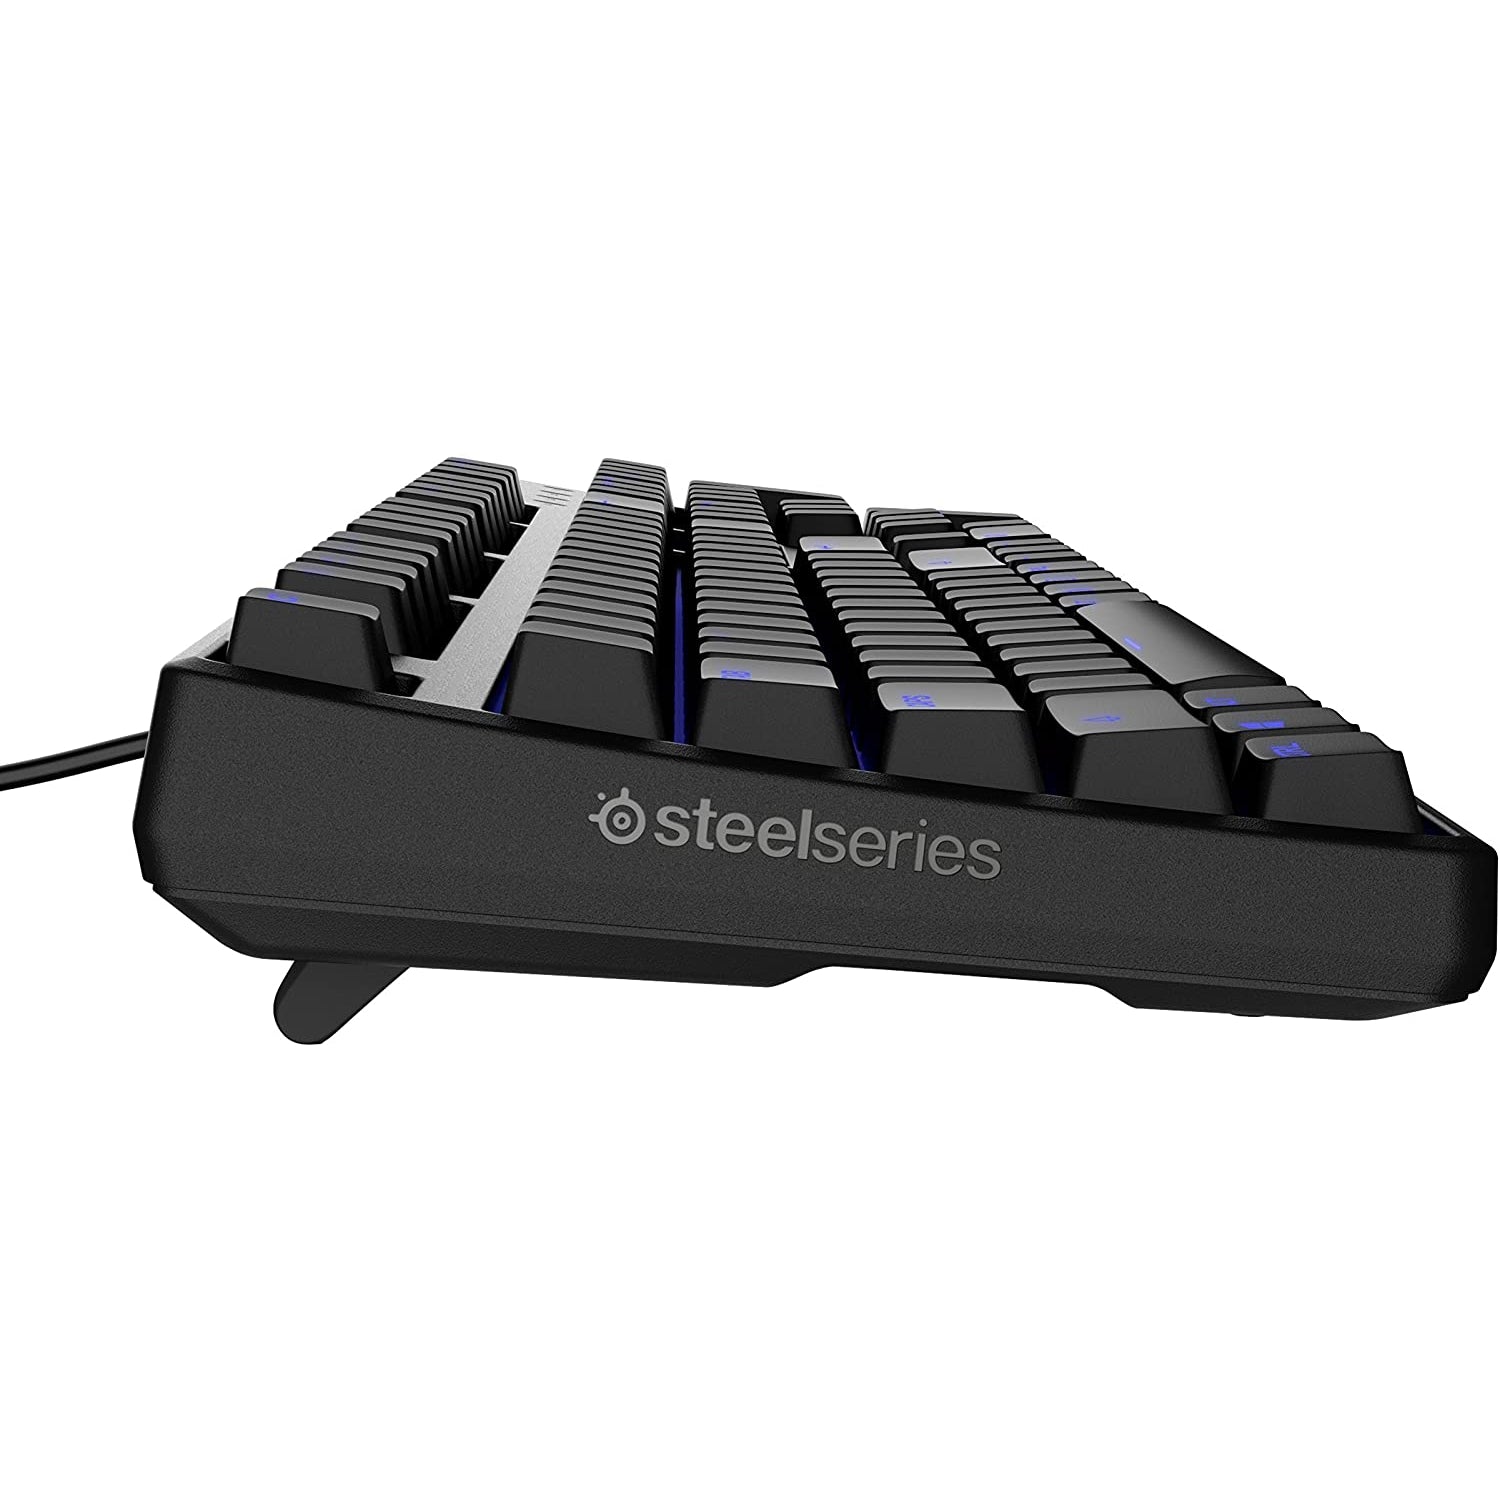 SteelSeries Apex M400 Gaming Keyboard